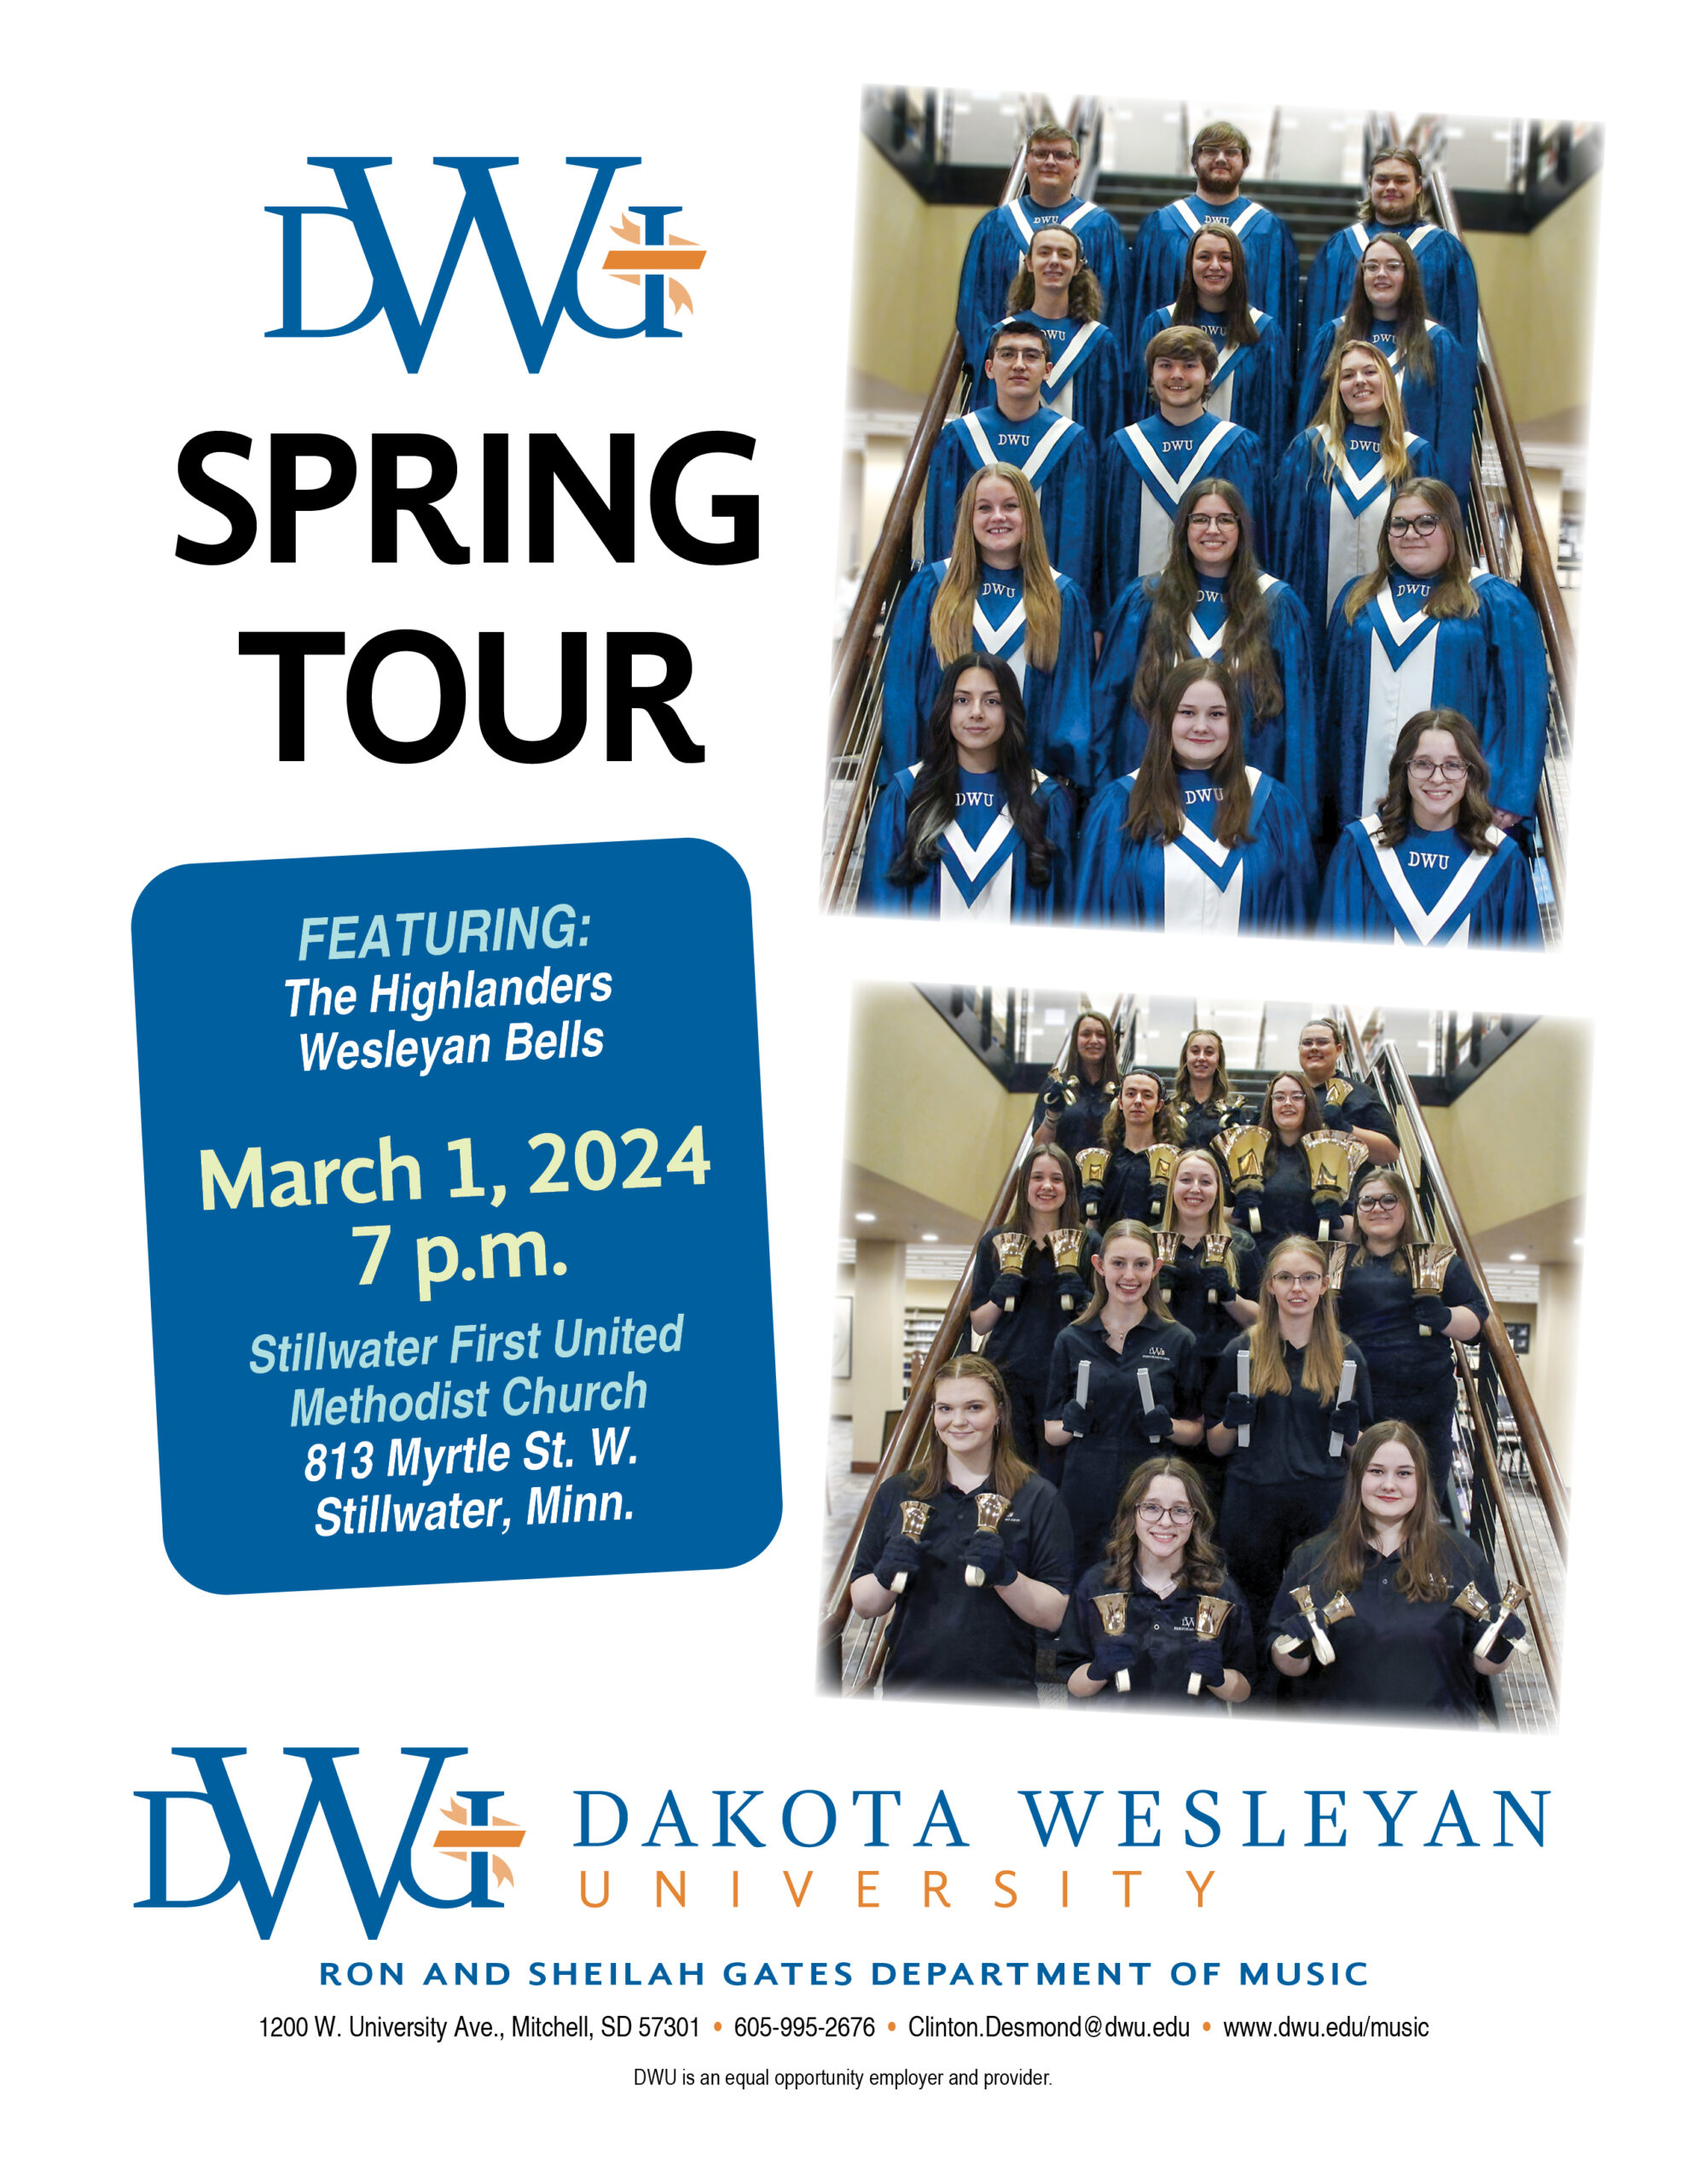 2a-19 (2024 DWU Spring Tour Poster)-Stillwater